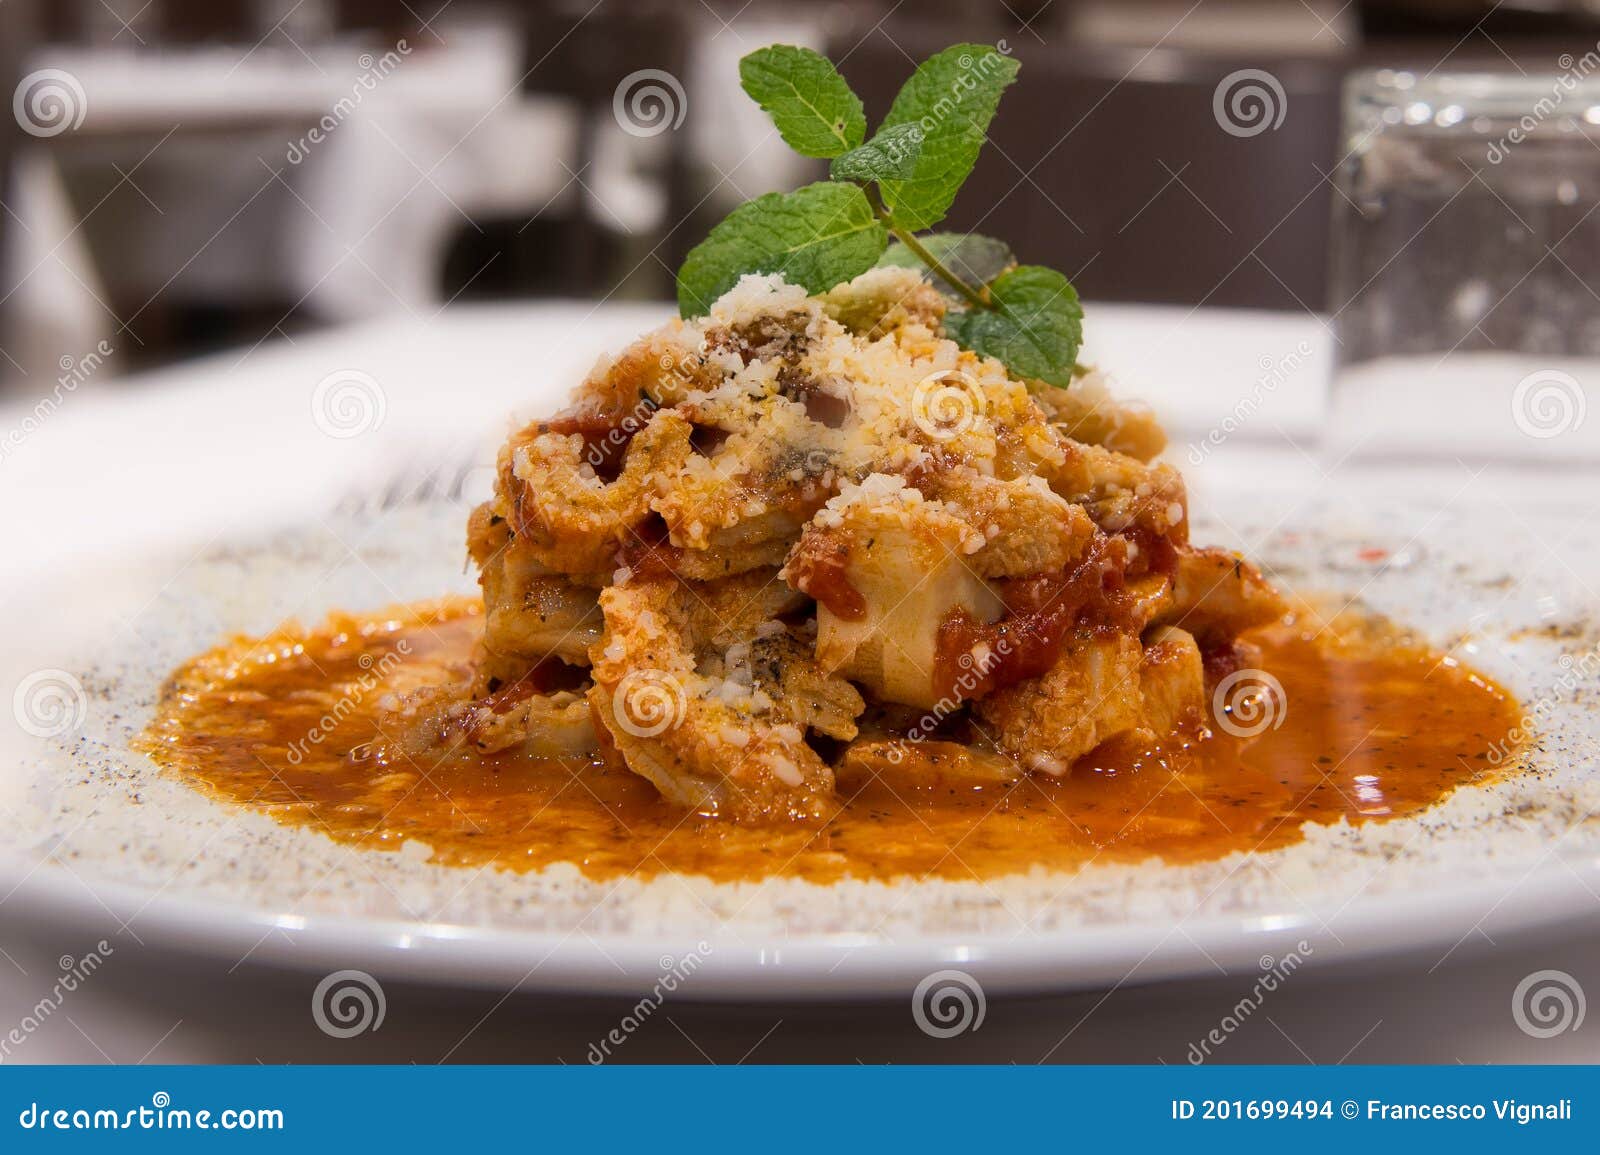 tripe meat called in rome trippa alla romana con menta, typical specialties from lazio region